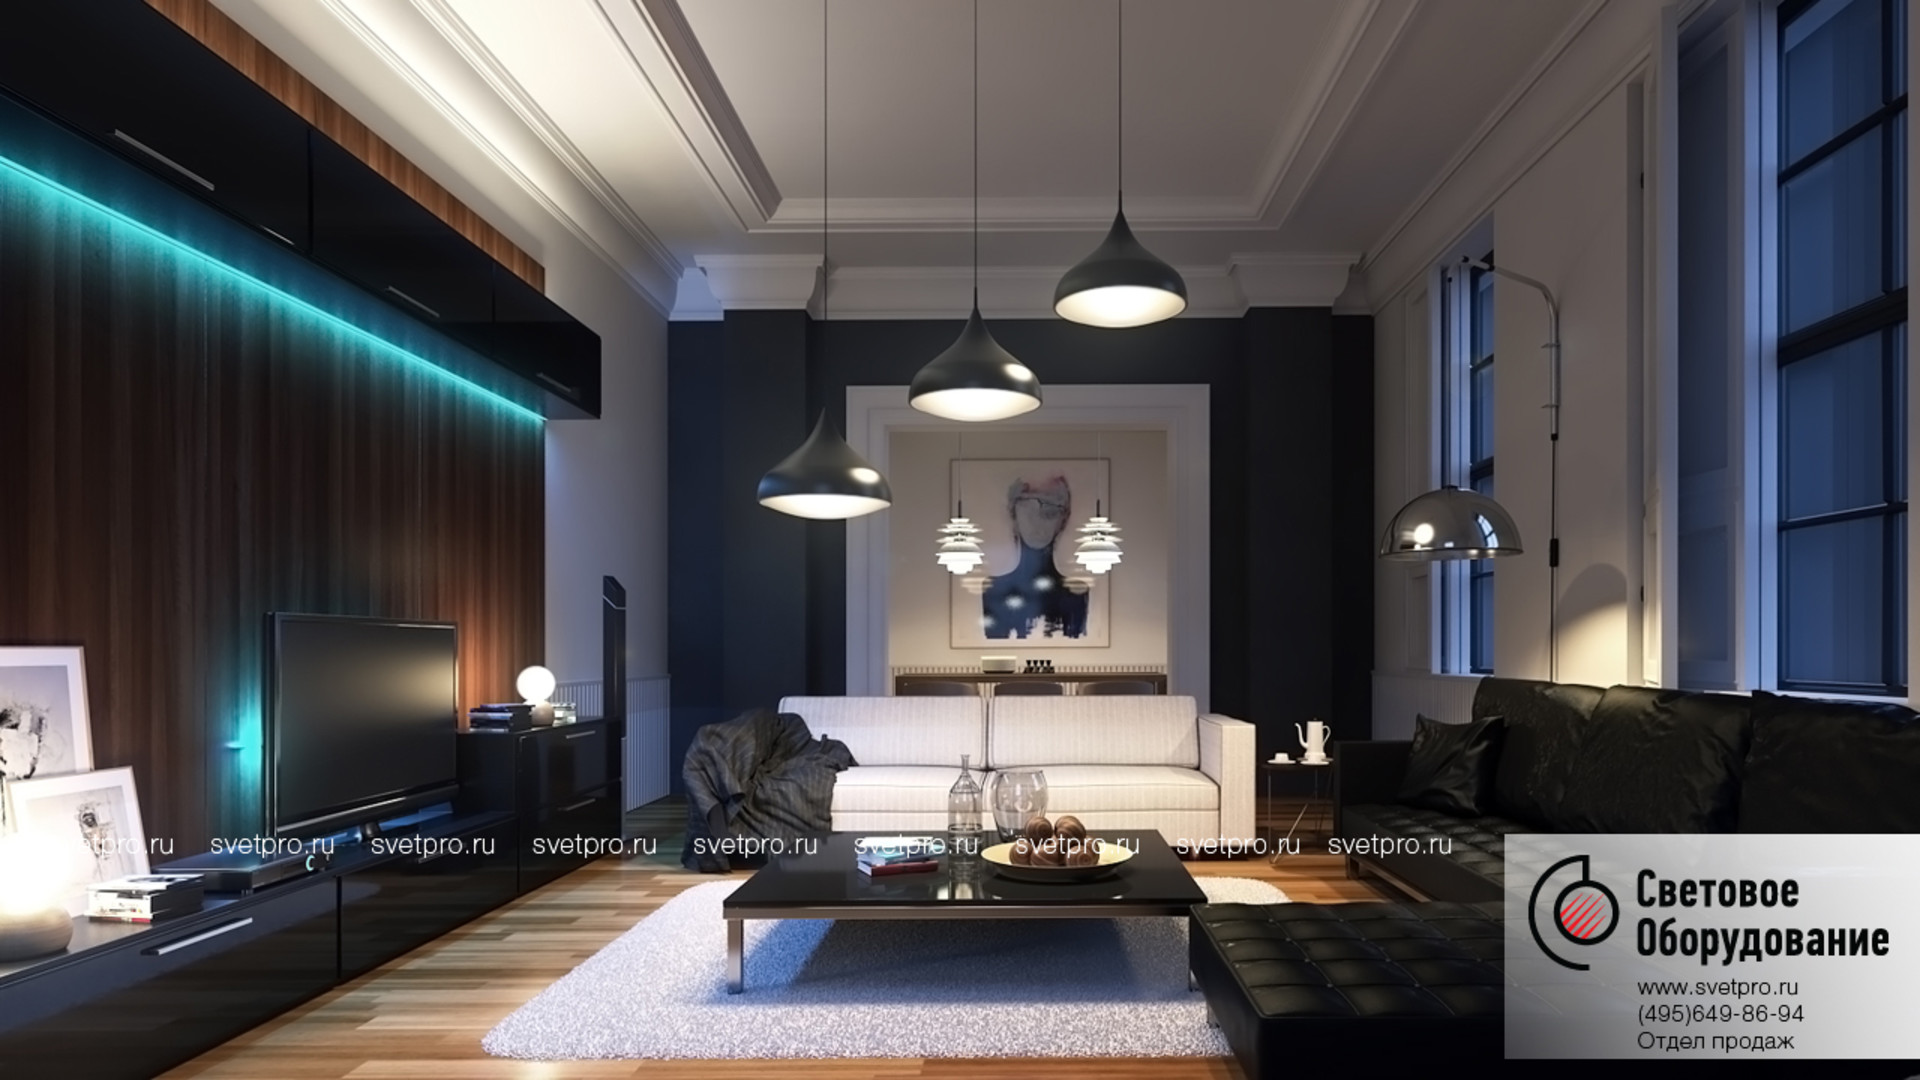 Источник света в комнате. Рендер интерьера в 3ds Max. Interior Lighting 3ds Max. Современное освещение в интерьере. Подсветка в интерьере квартиры.